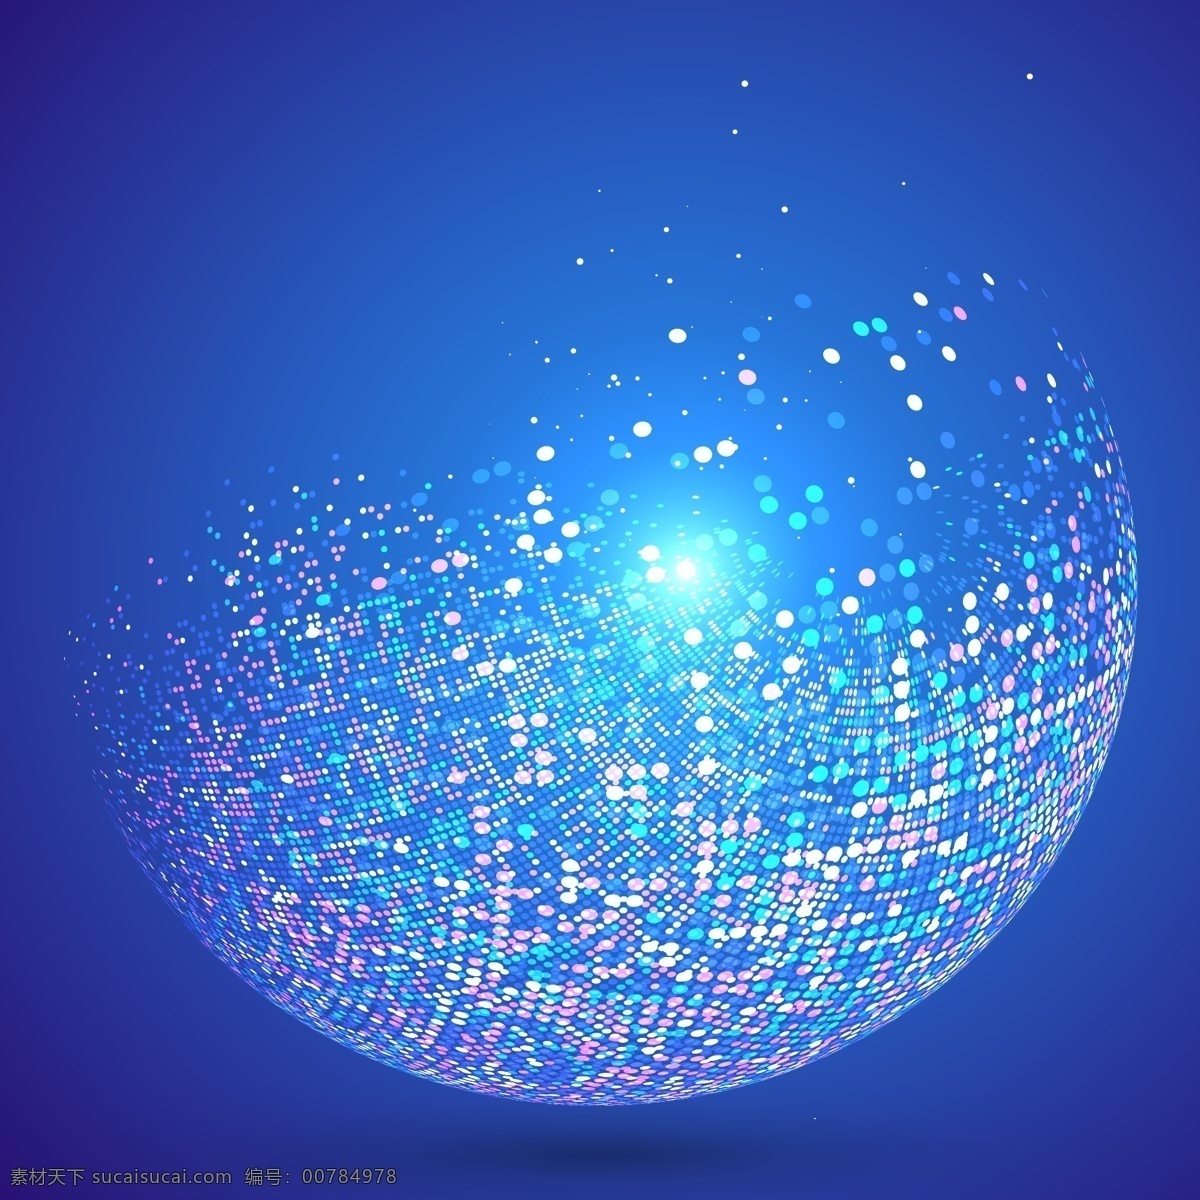 闪烁 粒子 抽象 地球 闪烁粒子 抽象地球 碎片 蓝色 科技 高端 蓝色背景 矢量素材